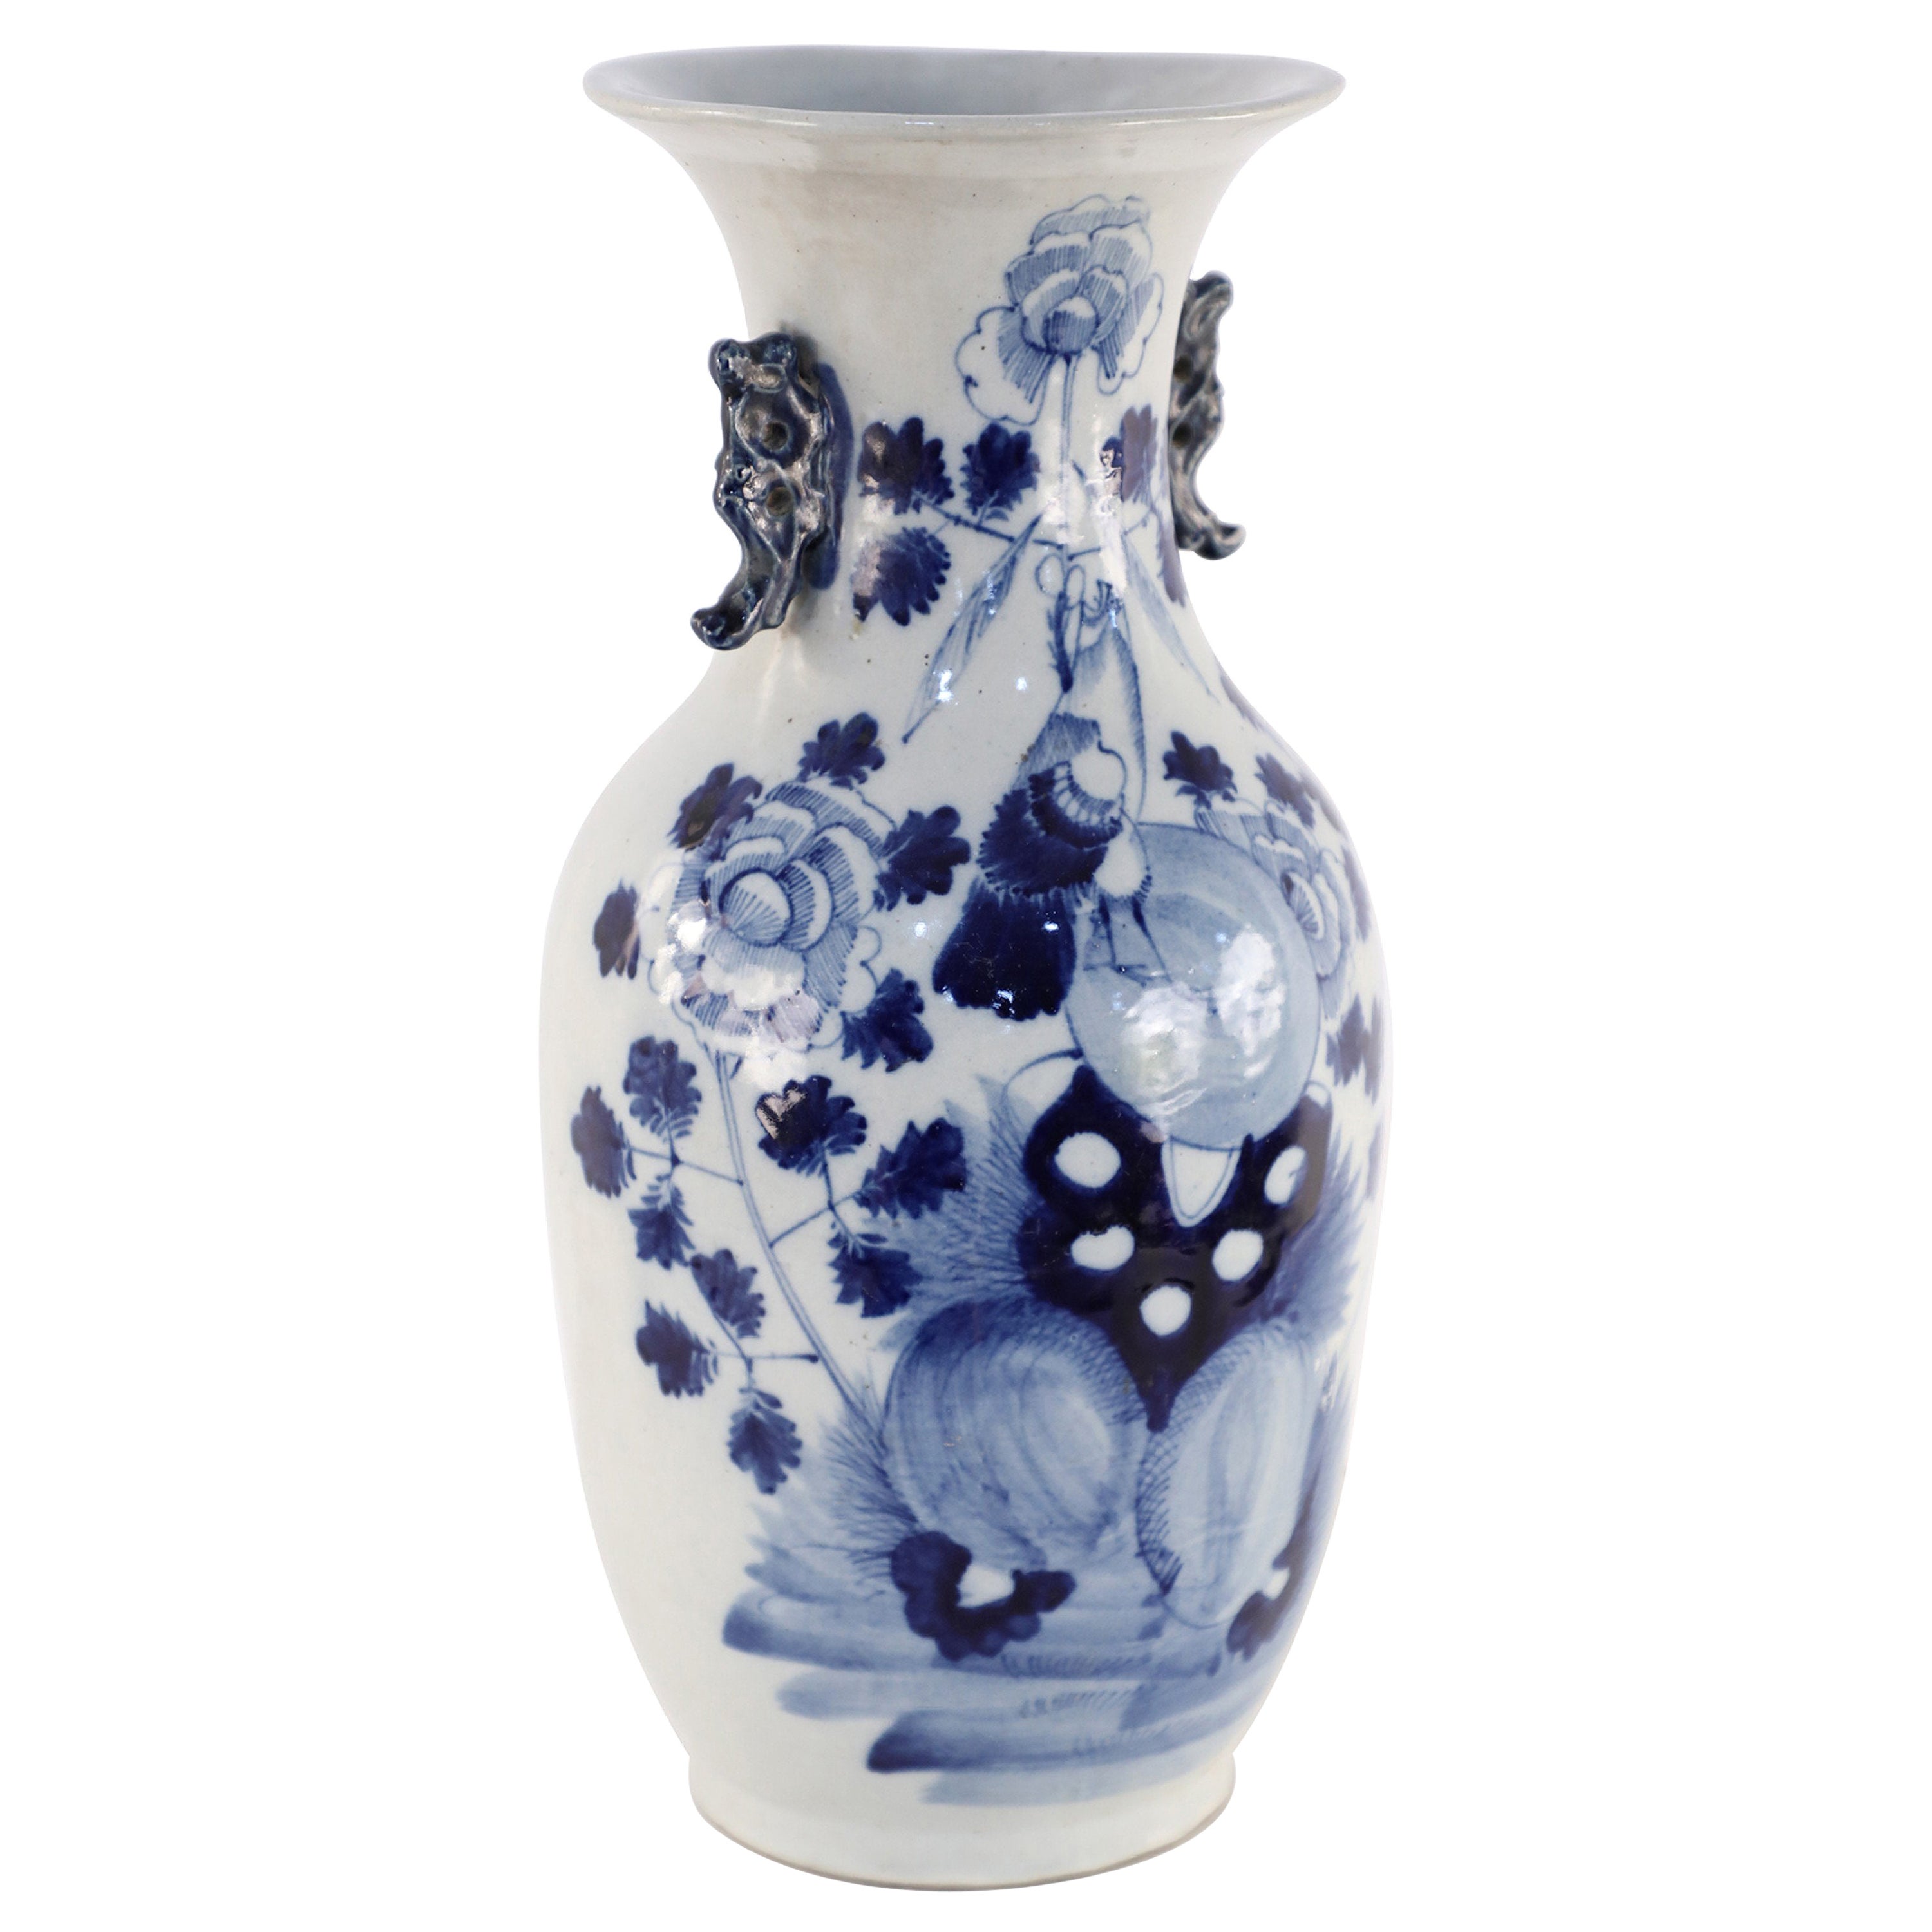 Chinesische Porzellanurne in Weiß und Blau mit weißem und blauem Lilienblatt und Blumenmuster